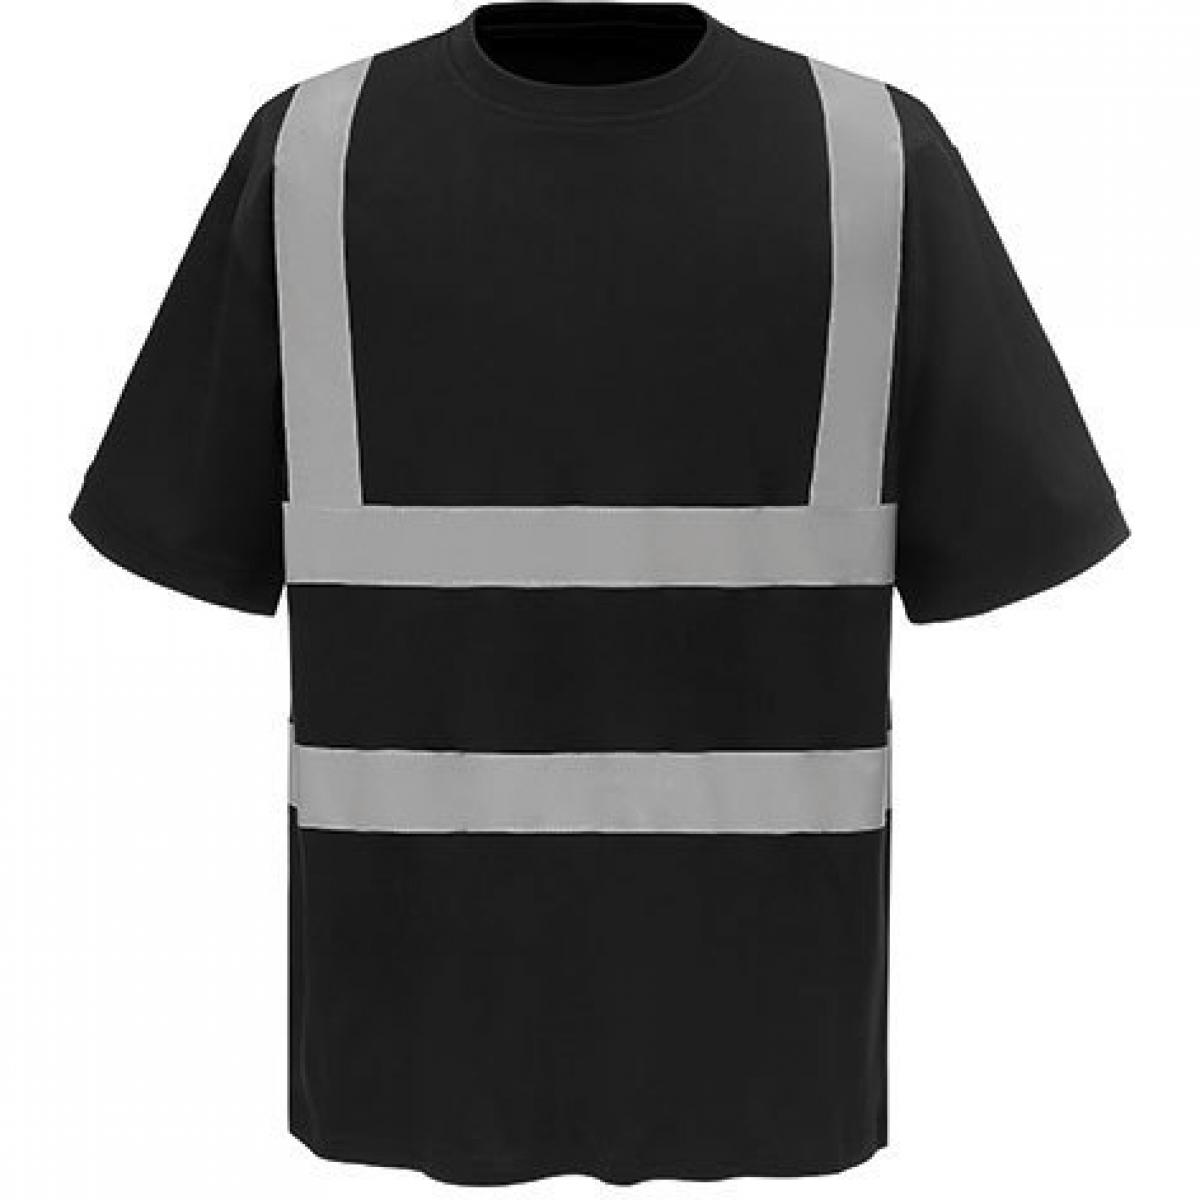 Hersteller: YOKO Herstellernummer: HVJ410 Artikelbezeichnung: Herren Hi Vis sicherheits T-Shirt EN ISO 20471 bis 6XL Farbe: Black